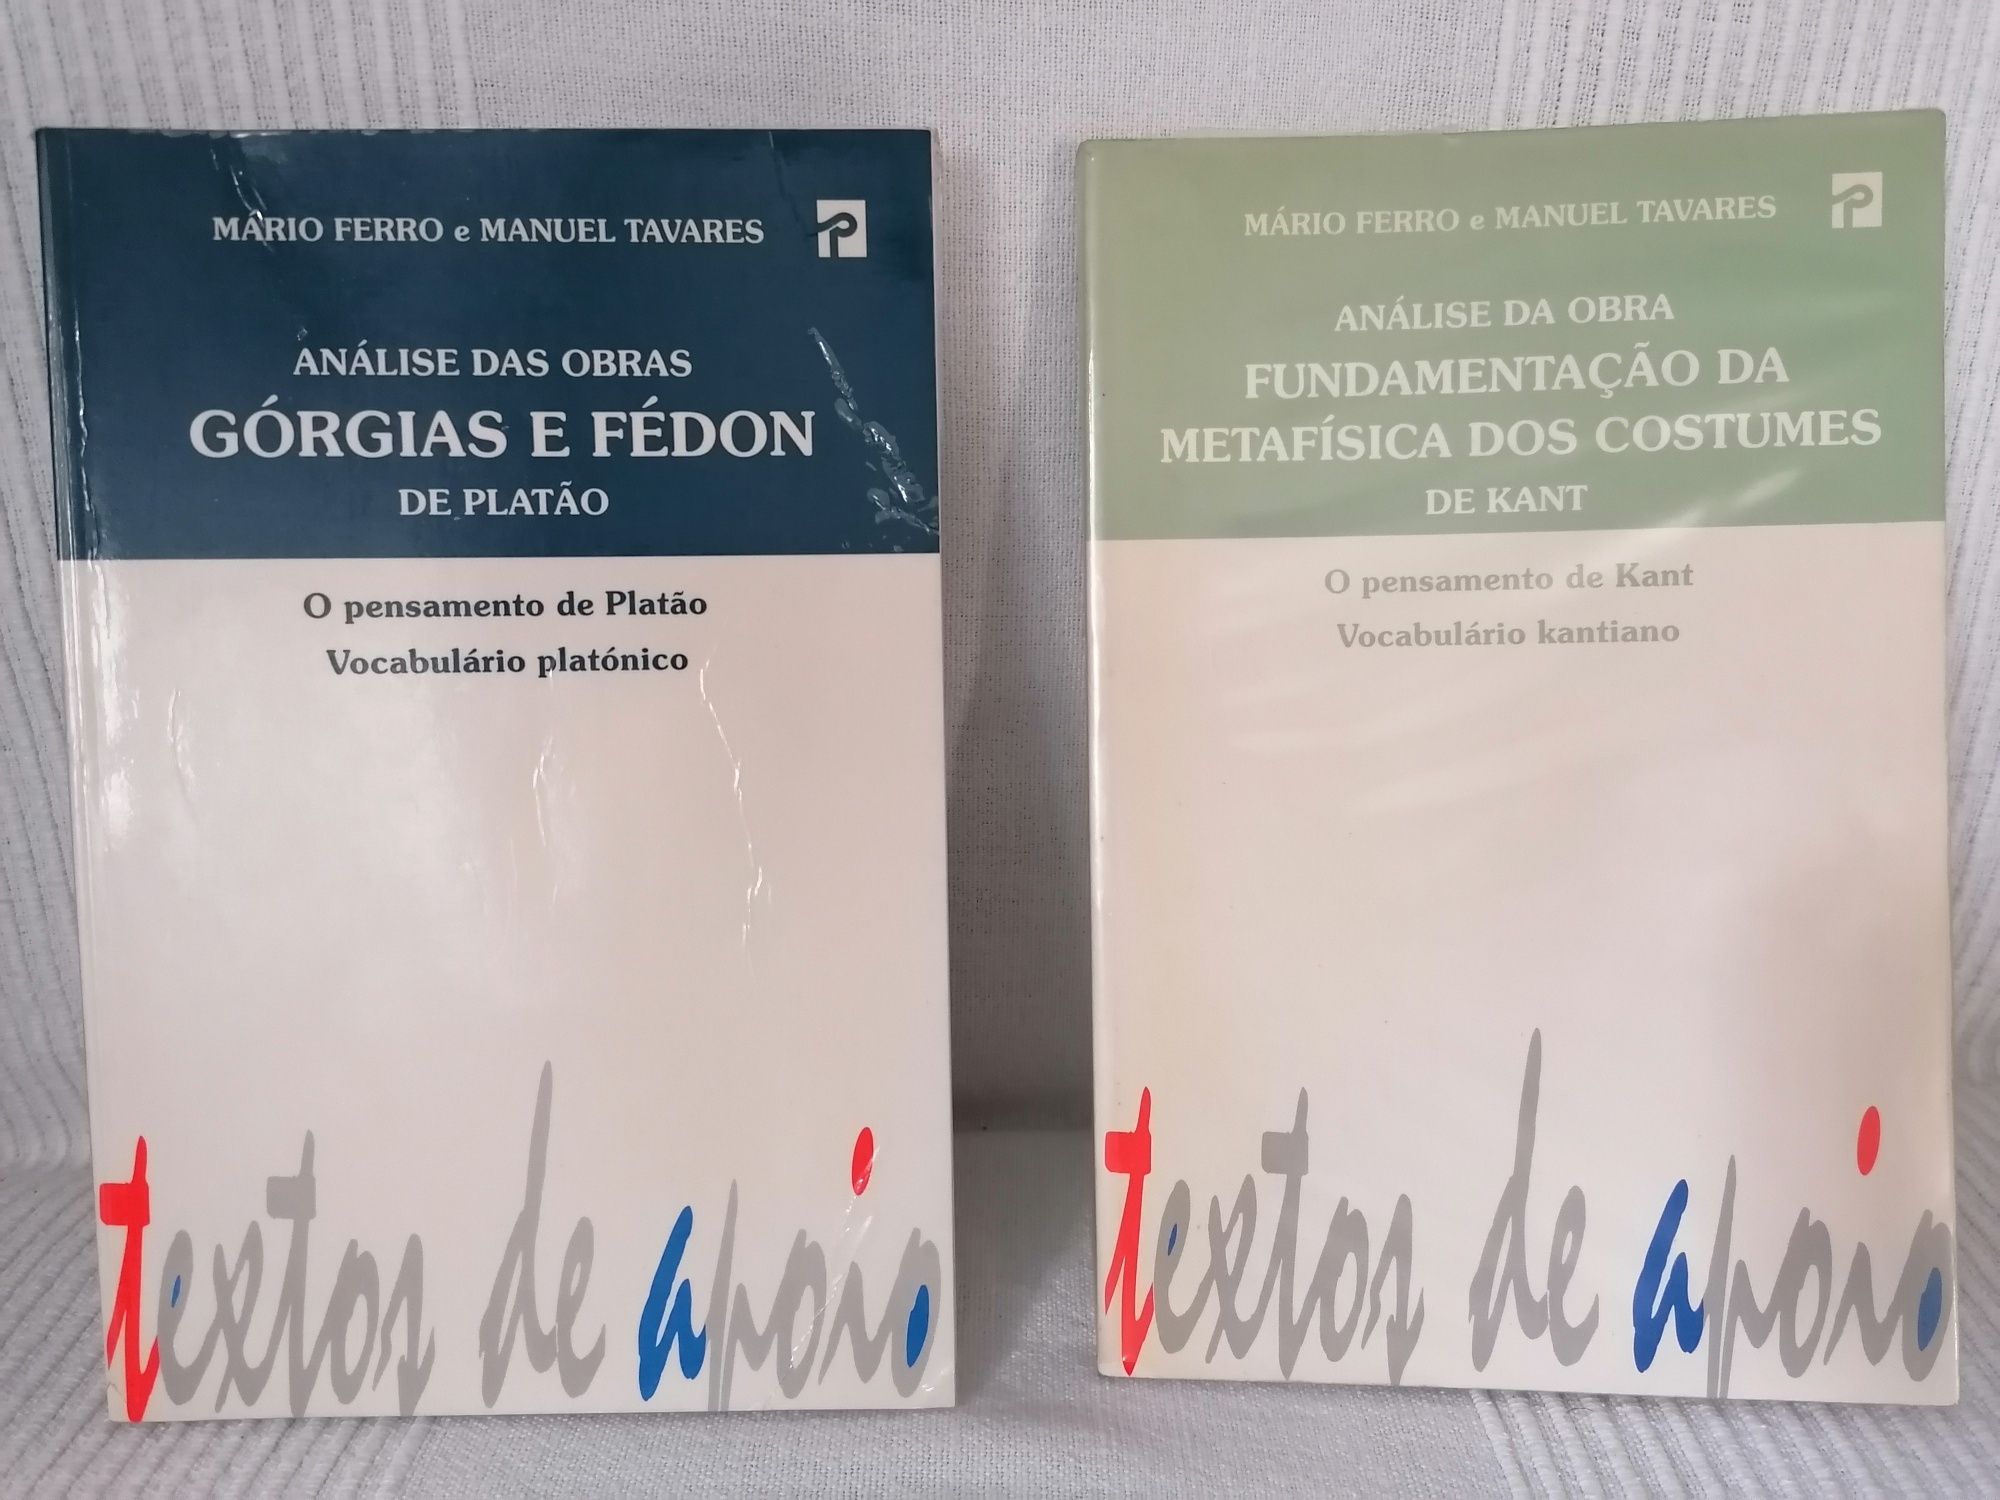 Górgias e Fedon Platão & Fundamentação Metafísica Costumes Kant